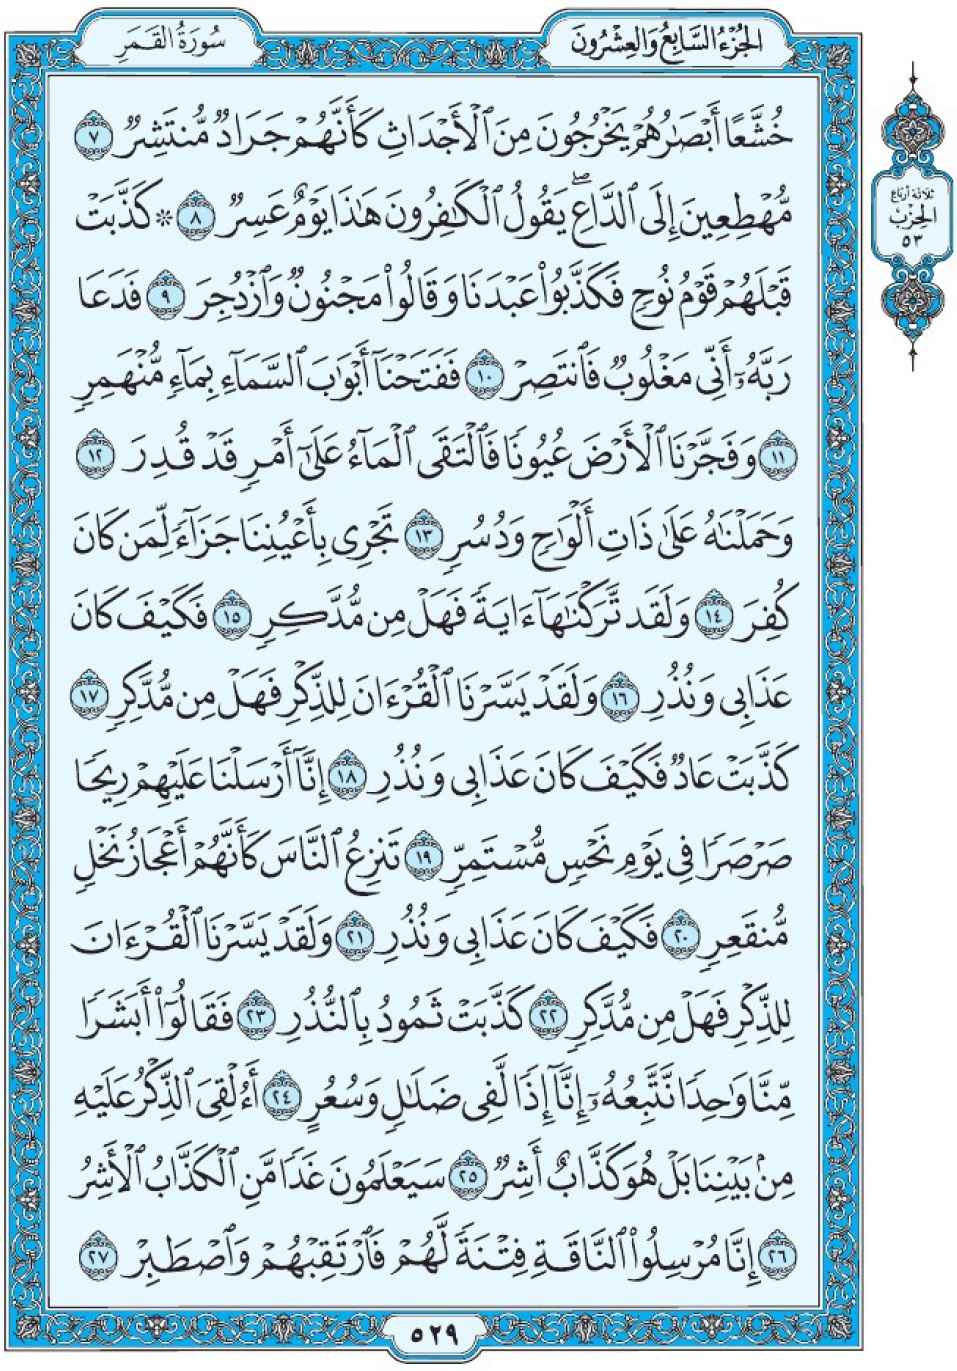 Коран Мединский мусхаф страница 529, сура аль-Камар, аят 7-27